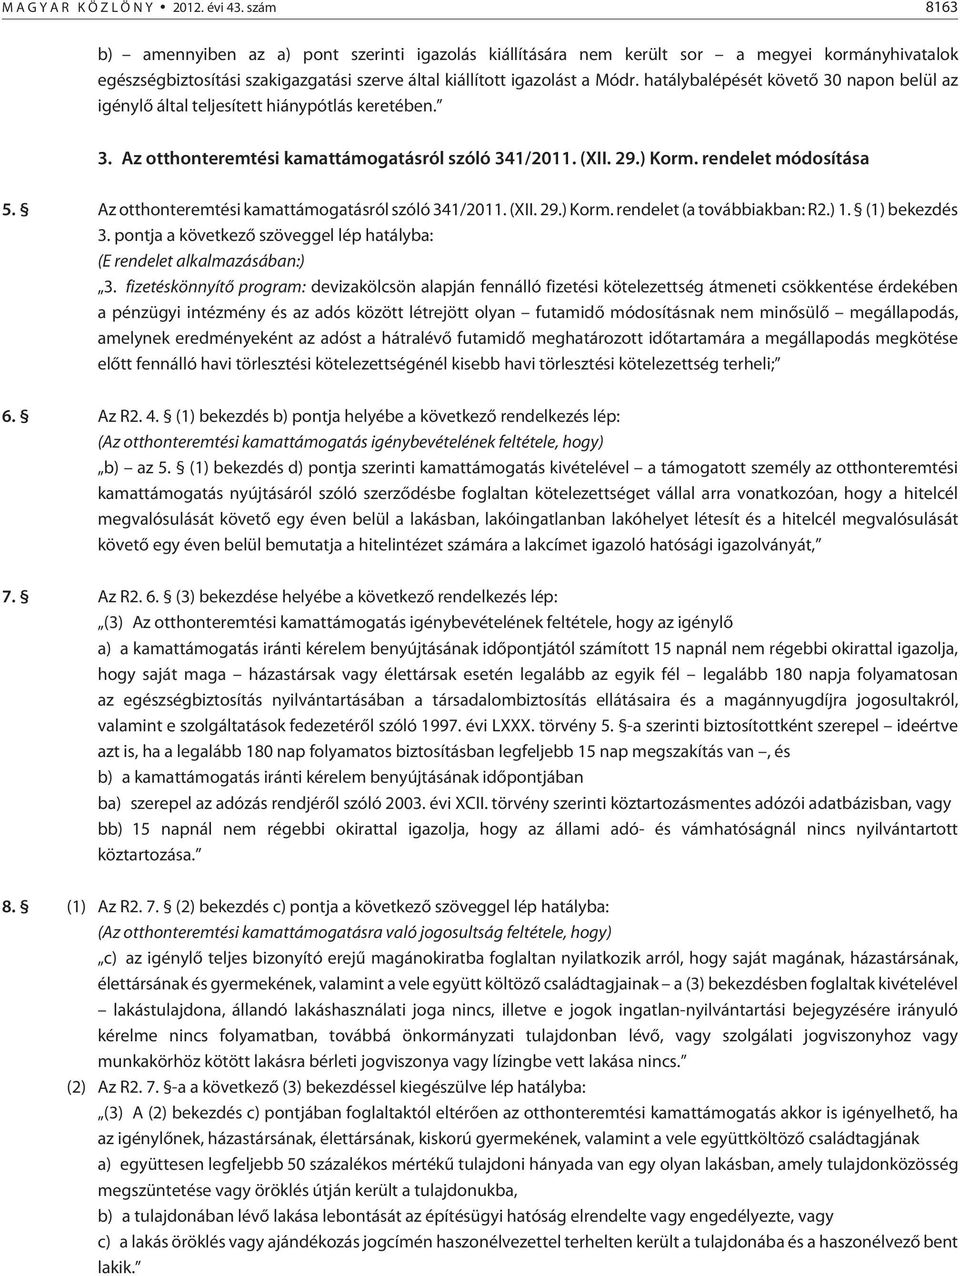 hatálybalépését követõ 30 napon belül az igénylõ által teljesített hiánypótlás keretében. 3. Az otthonteremtési kamattámogatásról szóló 341/2011. (XII. 29.) Korm. rendelet módosítása 5.